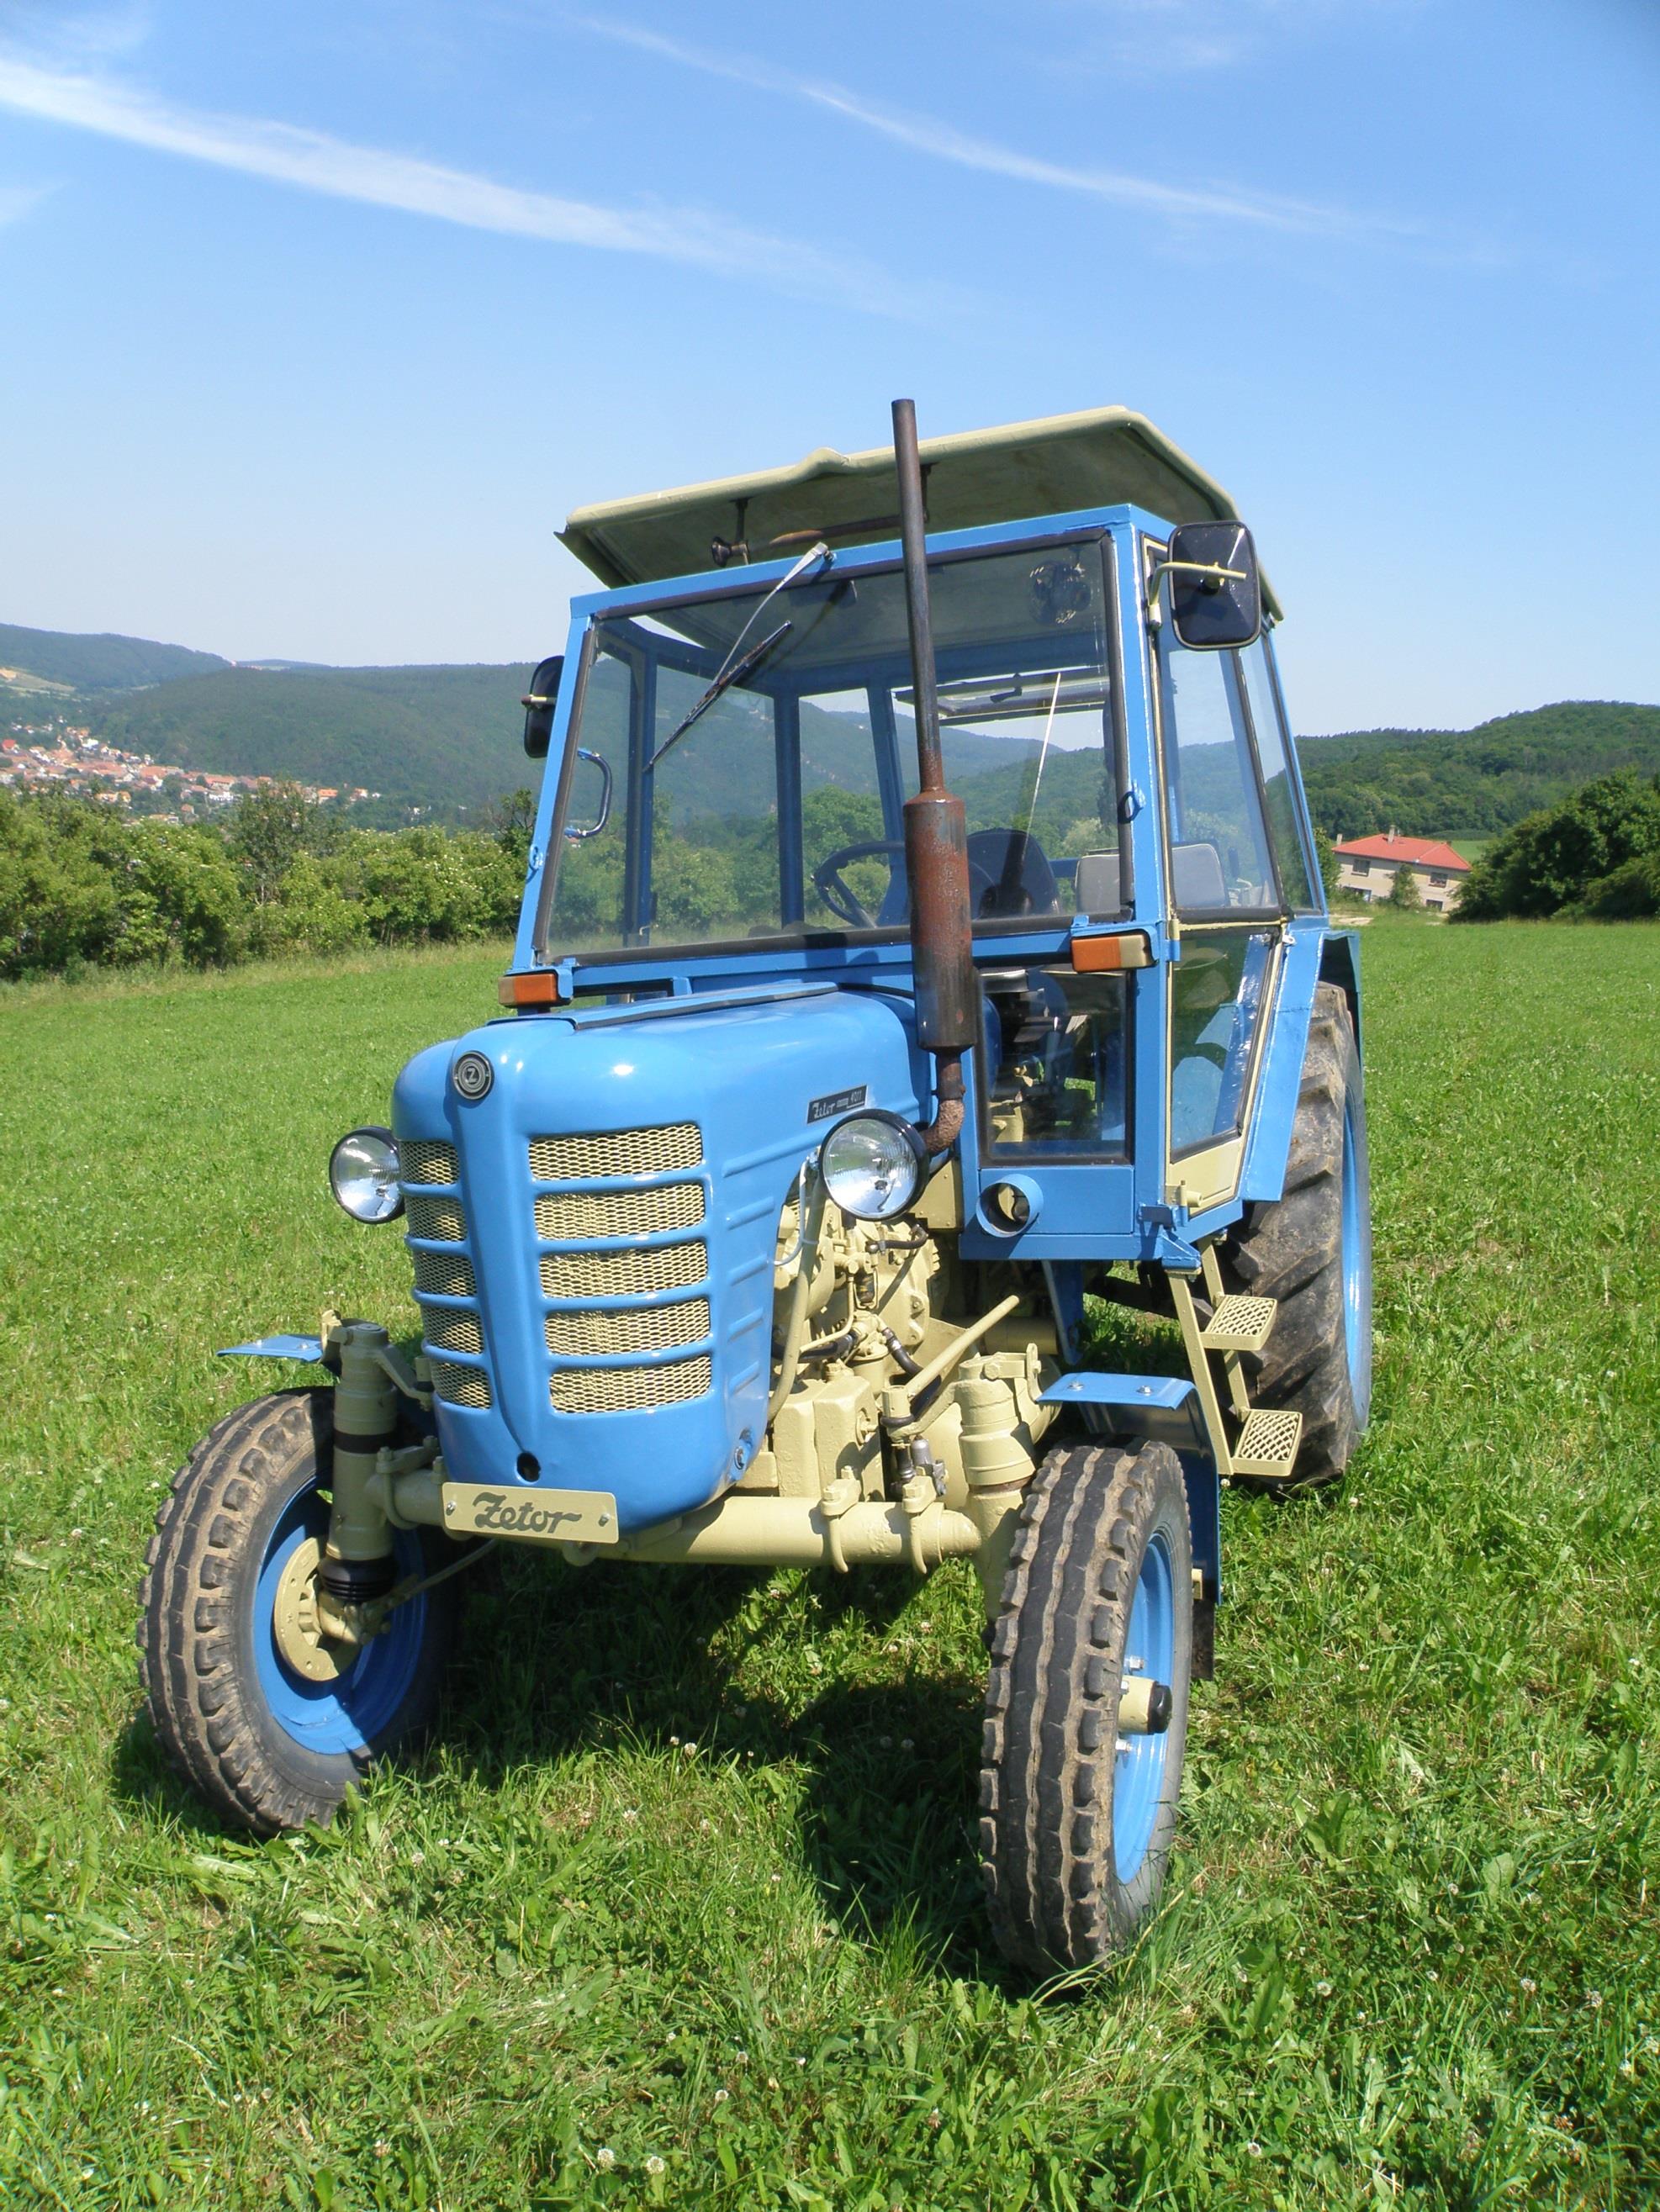 Maturitní projekt: Generální oprava traktoru Zetor PDF Free Download